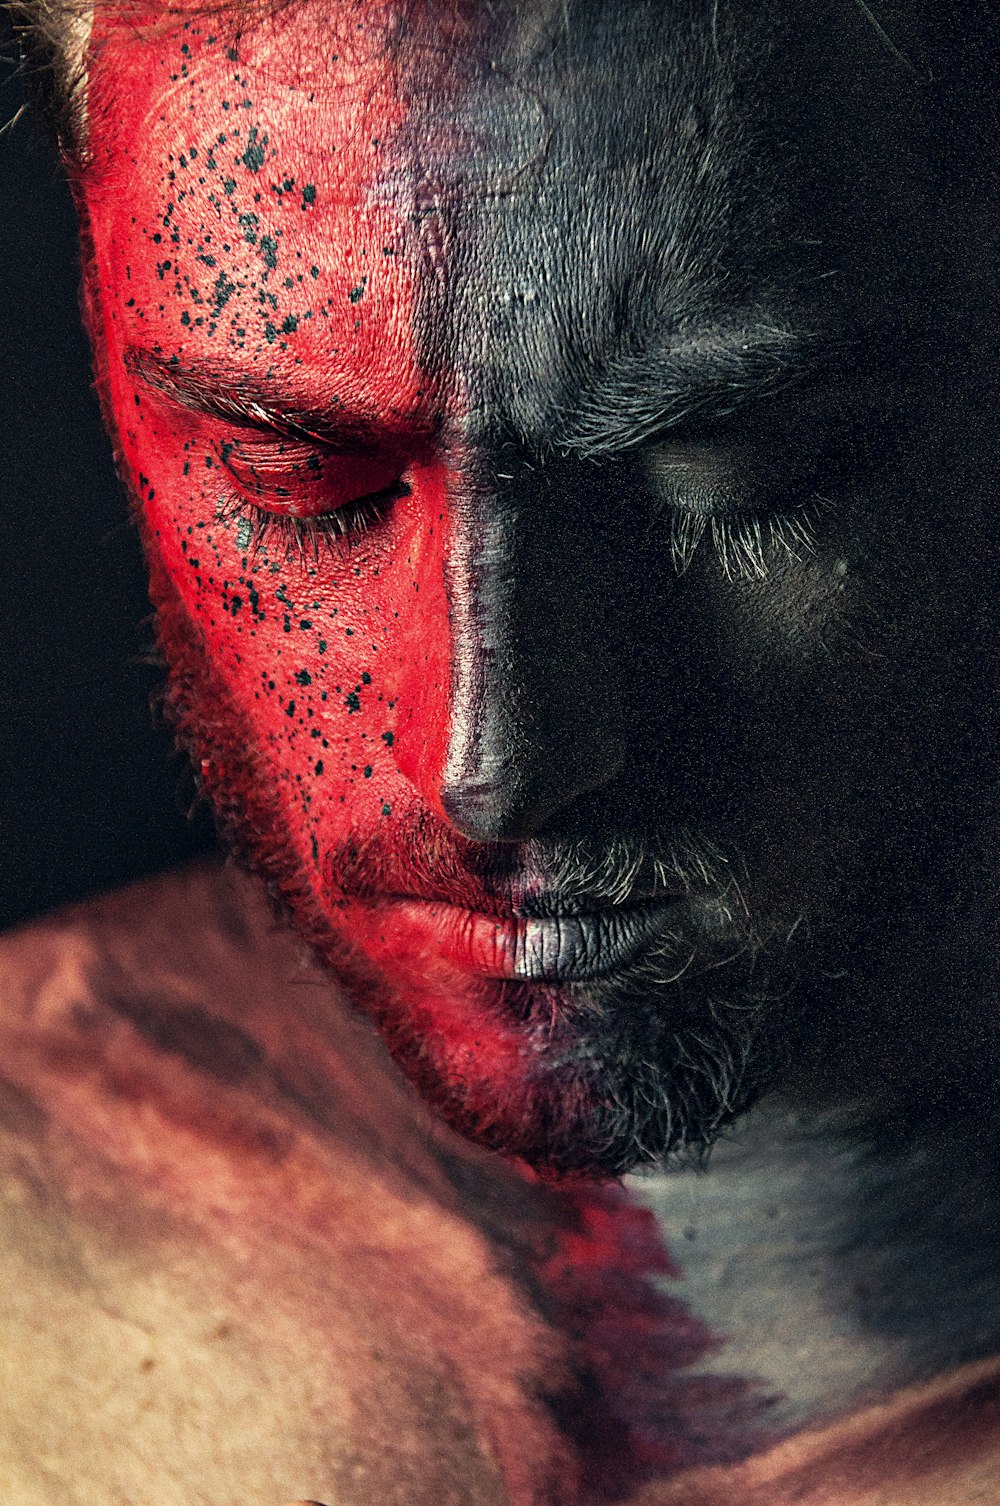 Retrato de hombre pintura roja y negra